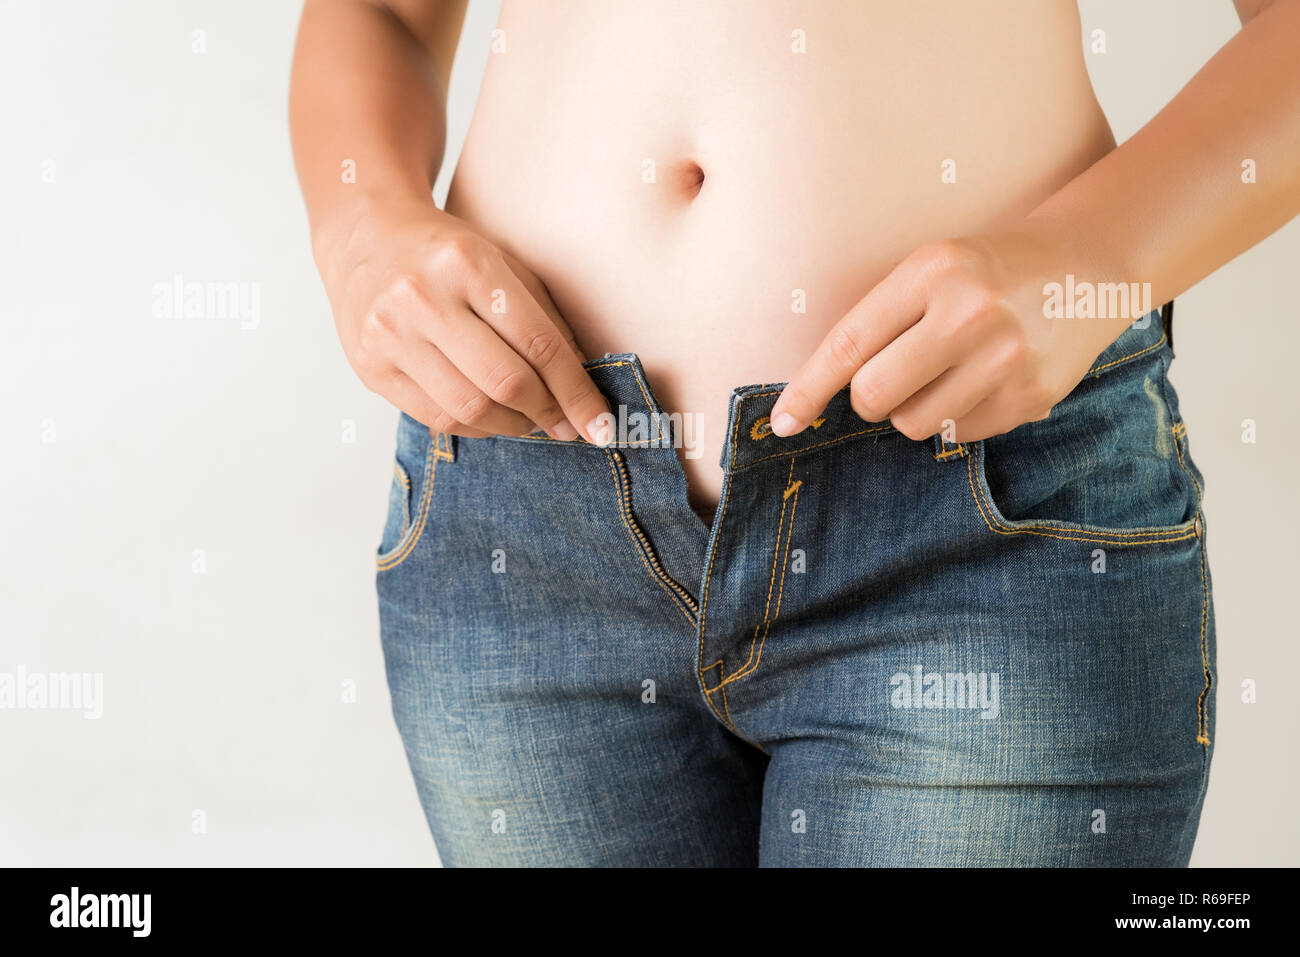 L'excès de grosse femme portant des jeans. L'estomac de perte de poids libre. Skinny jeans slim fit sur une saine administration. Concept de régime. Banque D'Images